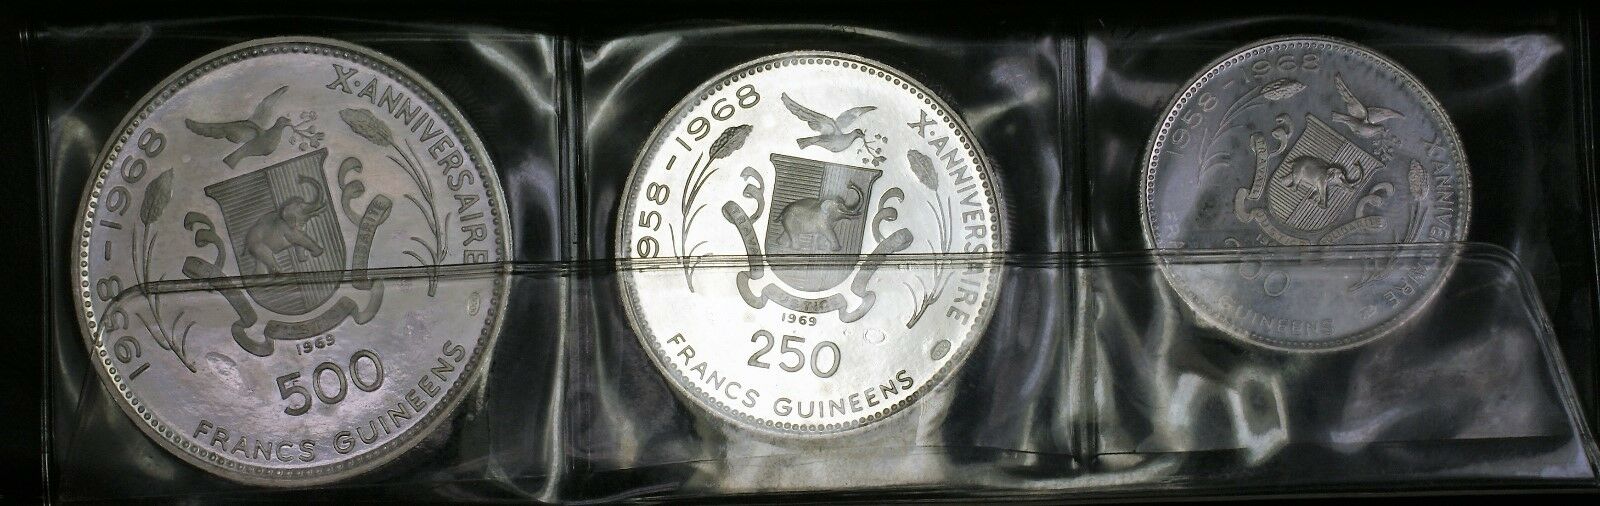 1969 Guniea 7 Coin Silver Proof Set 500 250 200 100 Francs Guineeas Cheetah Case